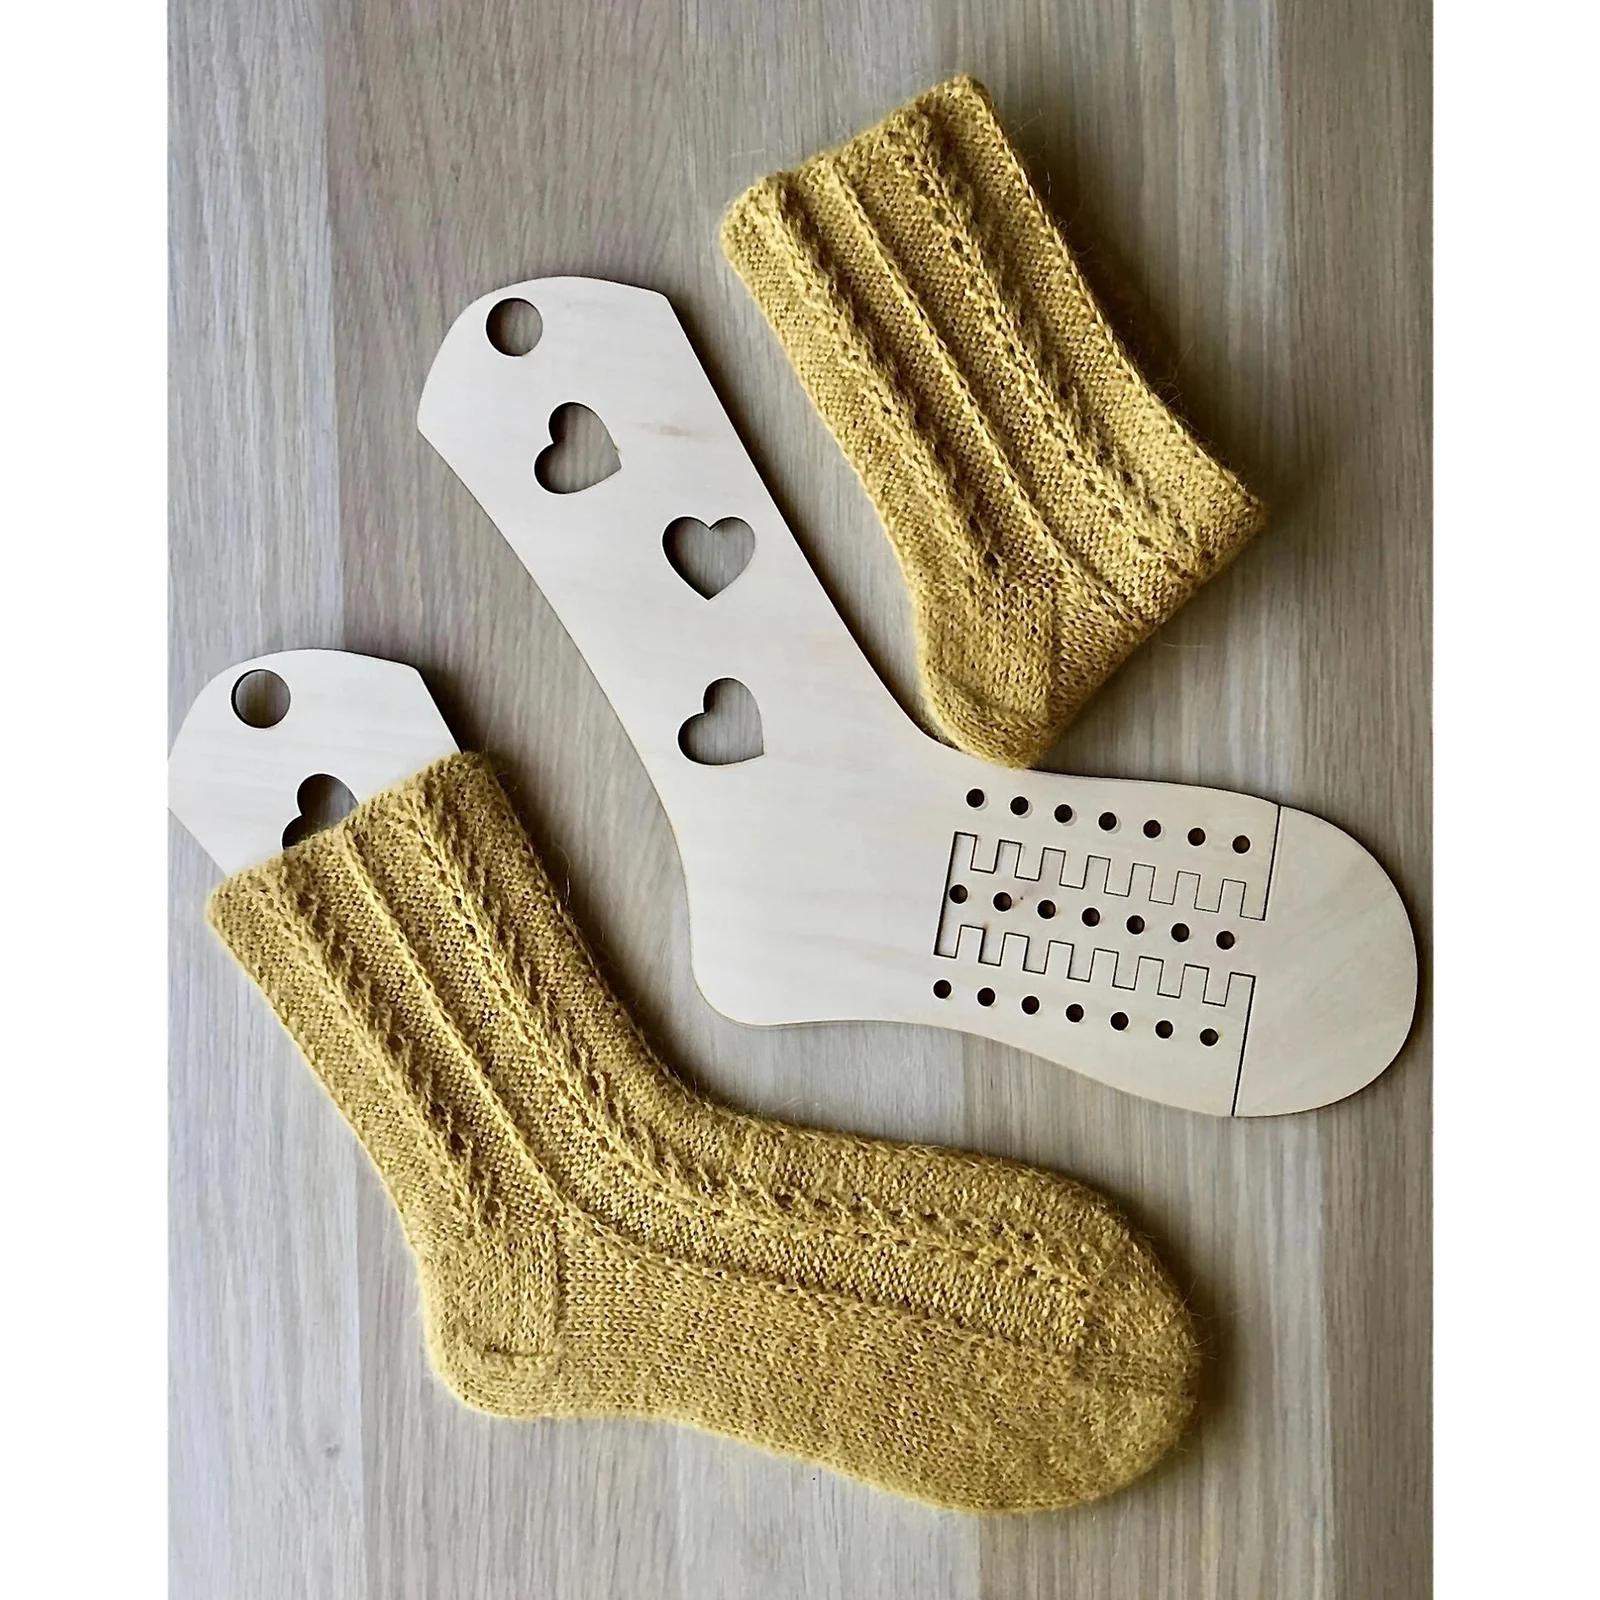 Bloqueadores de calcetines de madera Moldes de exhibición de medias para adultos Camillas Formas de calcetines hechos a mano Manija de tejer de calcetines de bricolaje Artesanías de hilo 